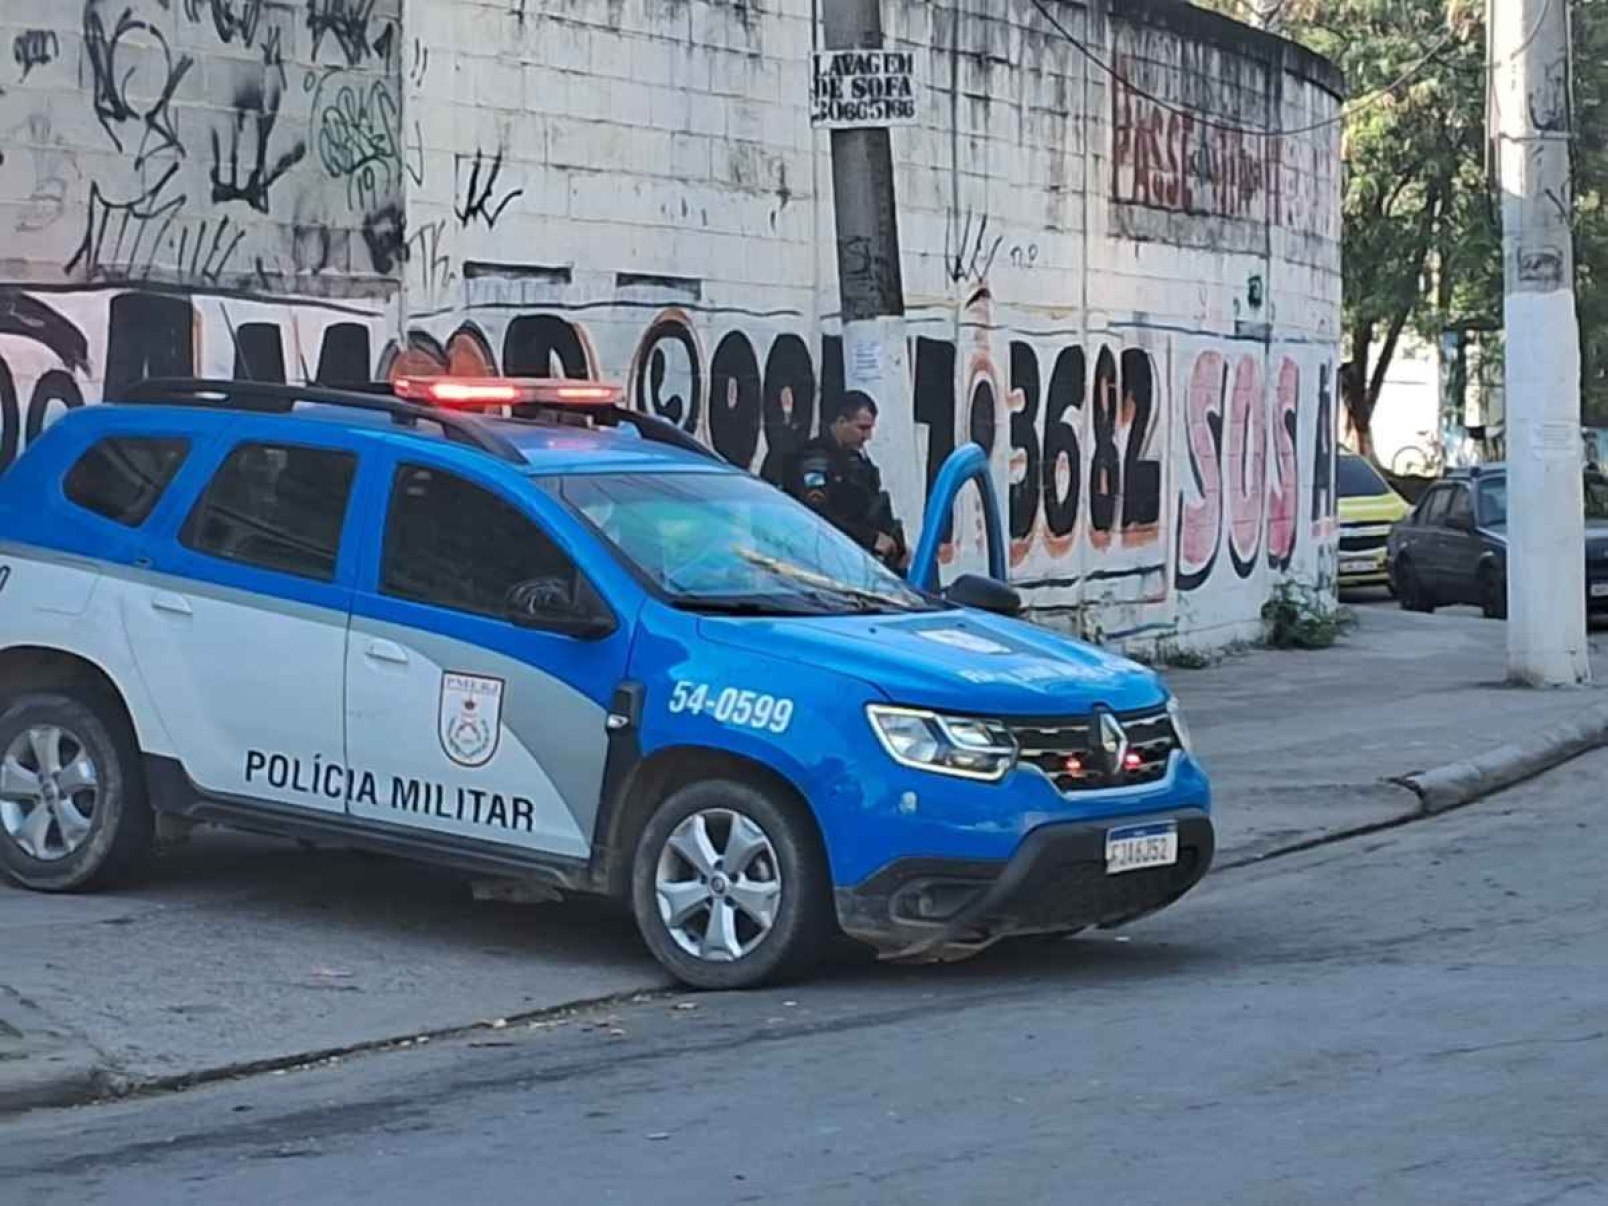 Sete de MG são presos em operação policial no RJ contra roubo de carros